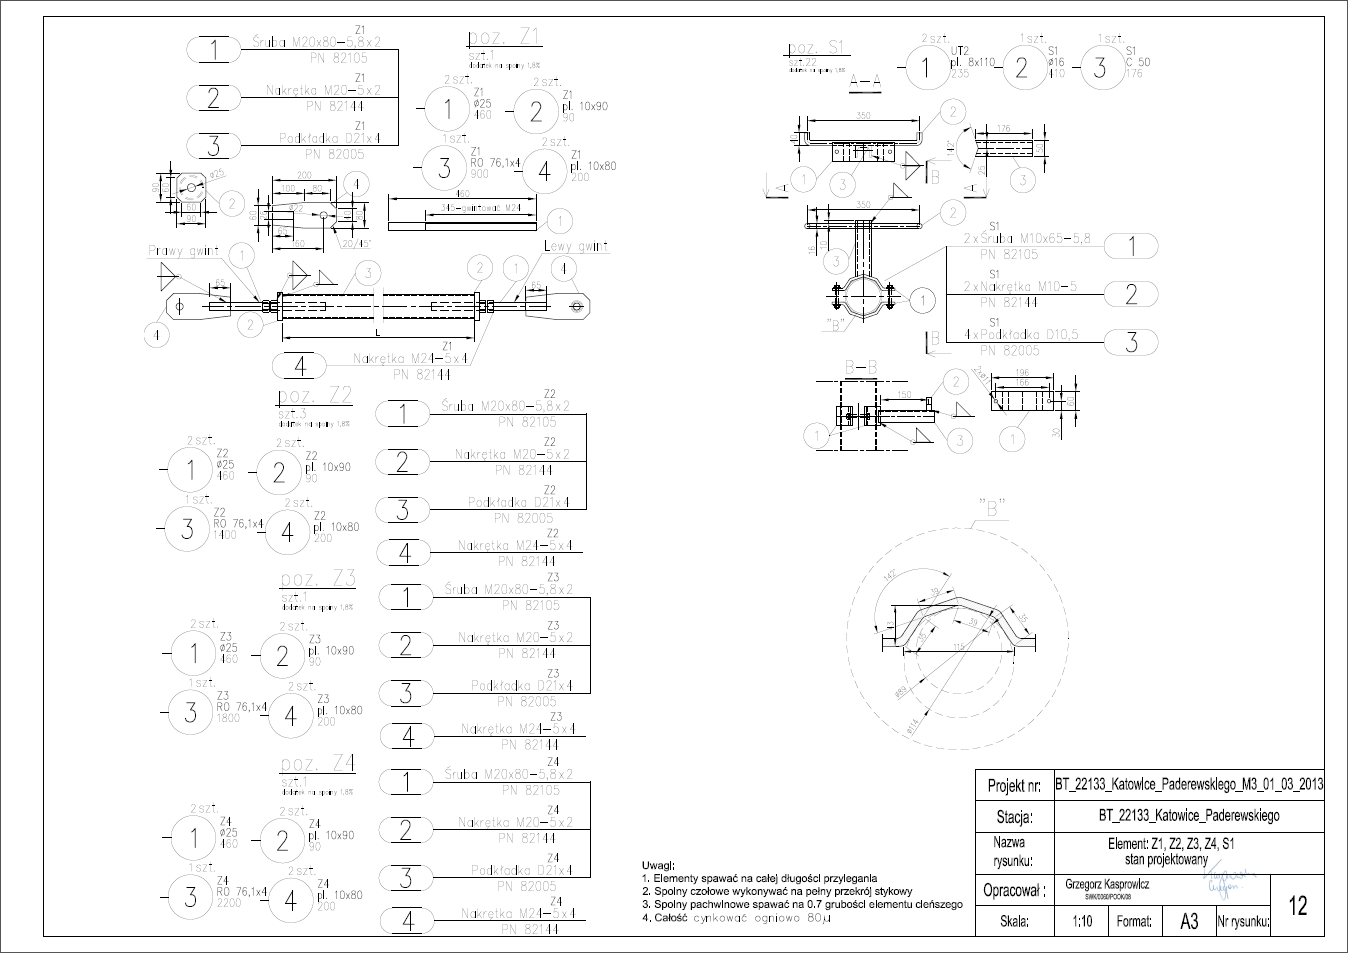 Stacja bazowa - element Z1, Z2, Z3, Z4, S1